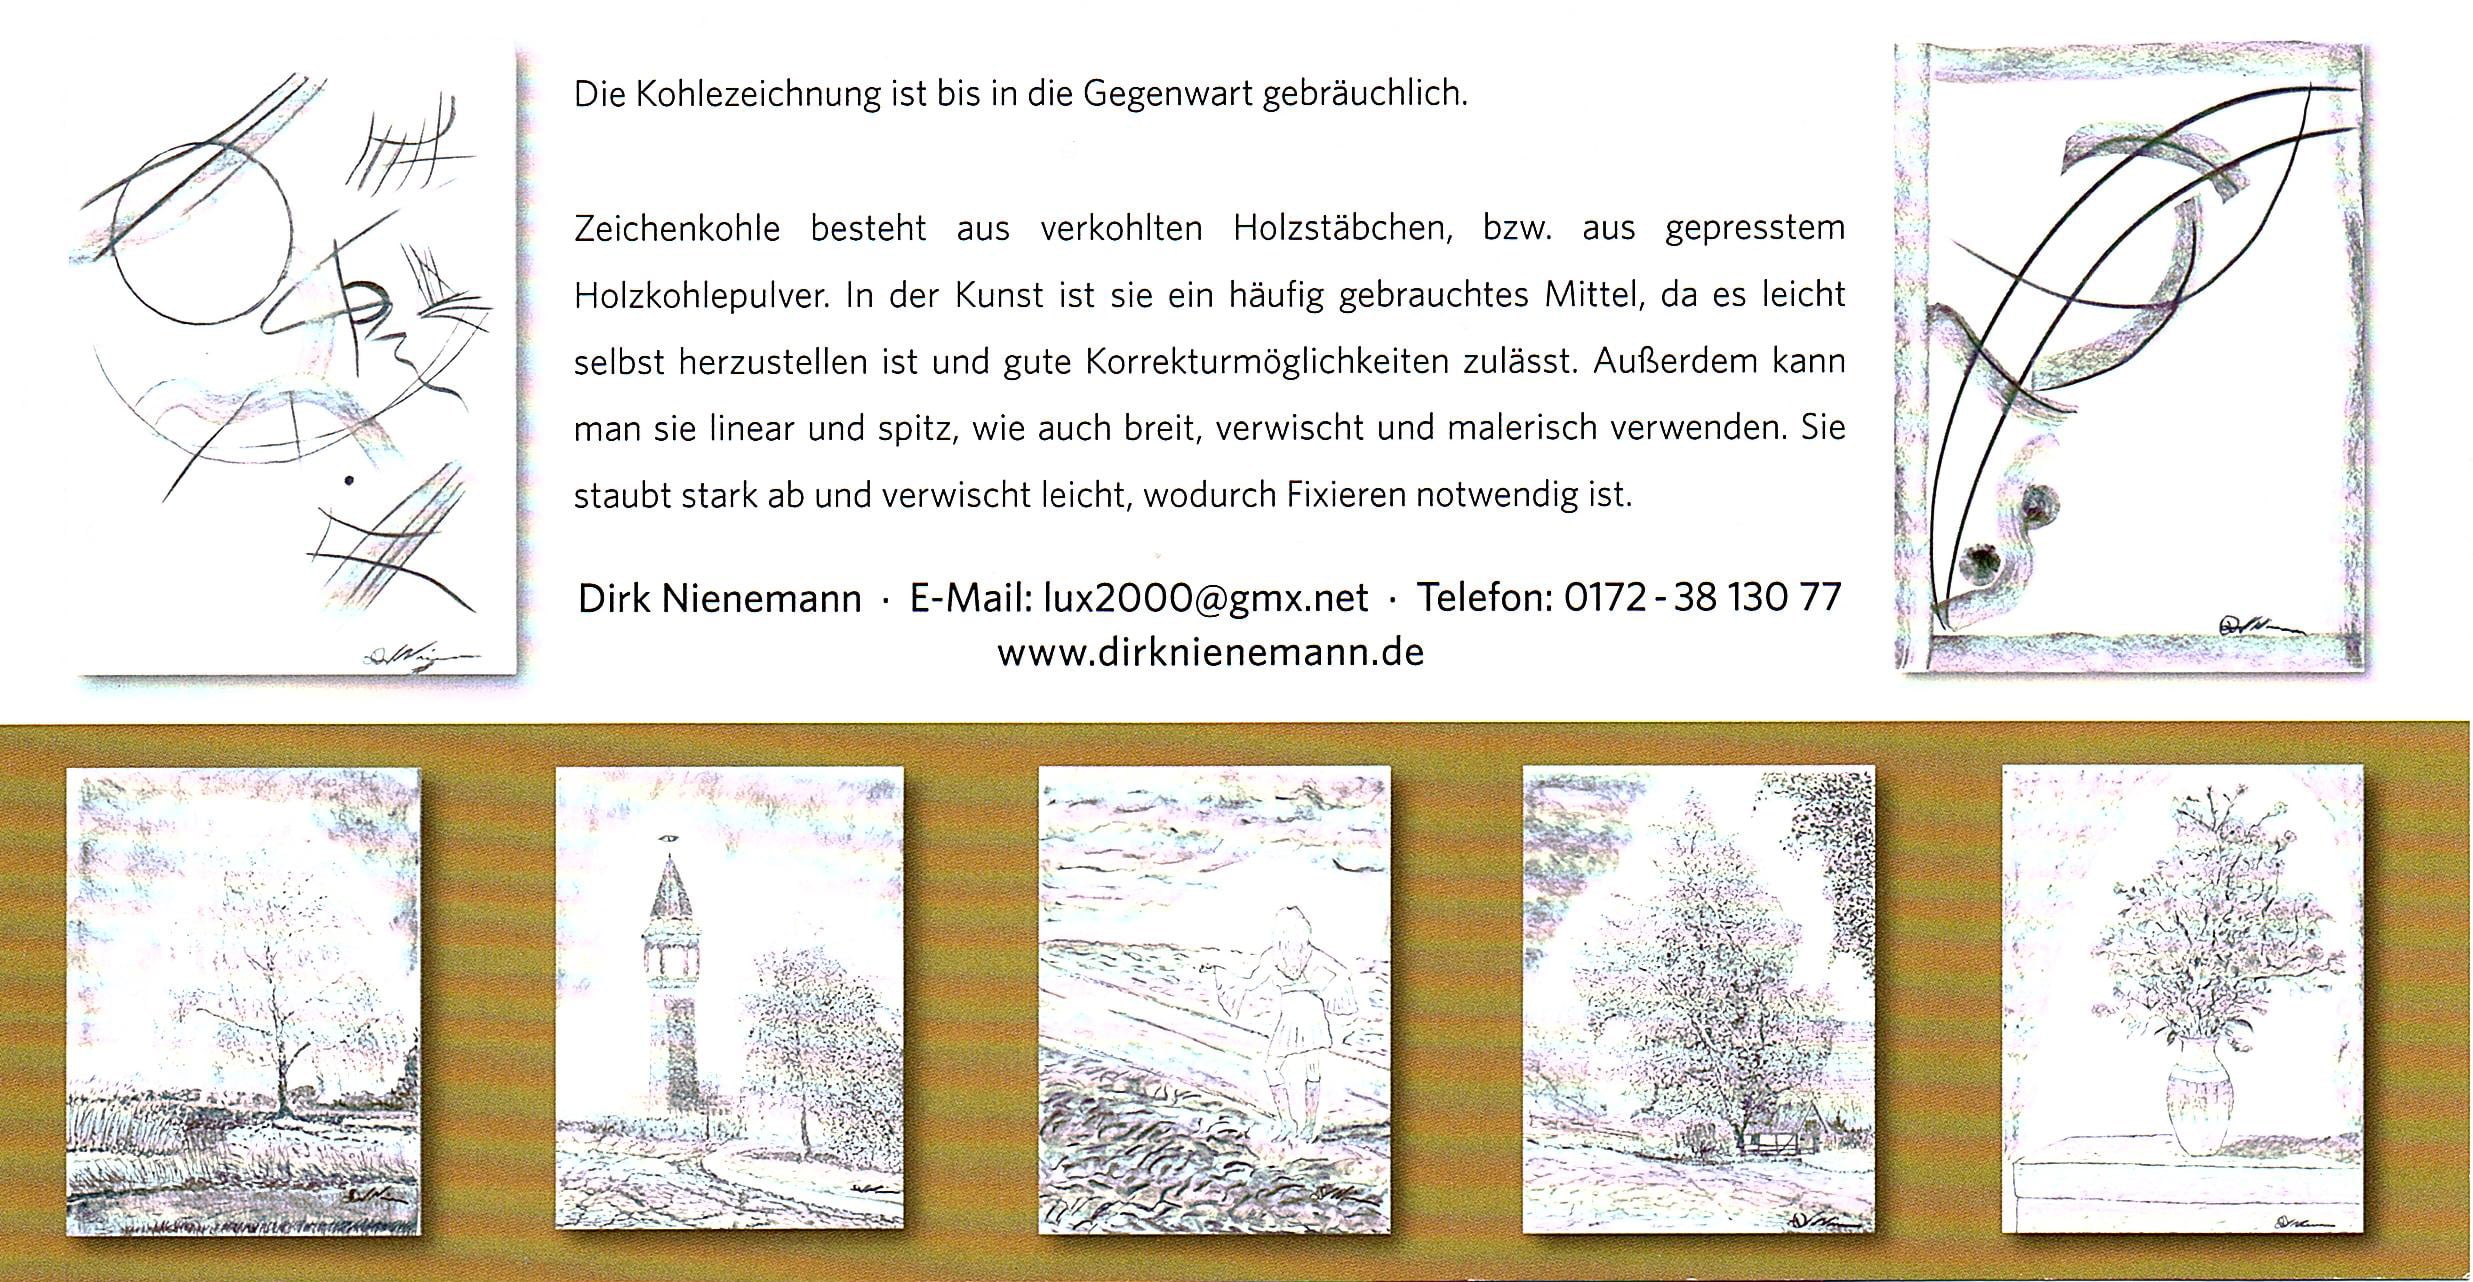 Dirk Nienemann, Künstler Holzkohlezeichnungen, Lehrte Hannover, Drucke Holzkohlezeichnungen,Abstrakte, Landschaft, Stillleben